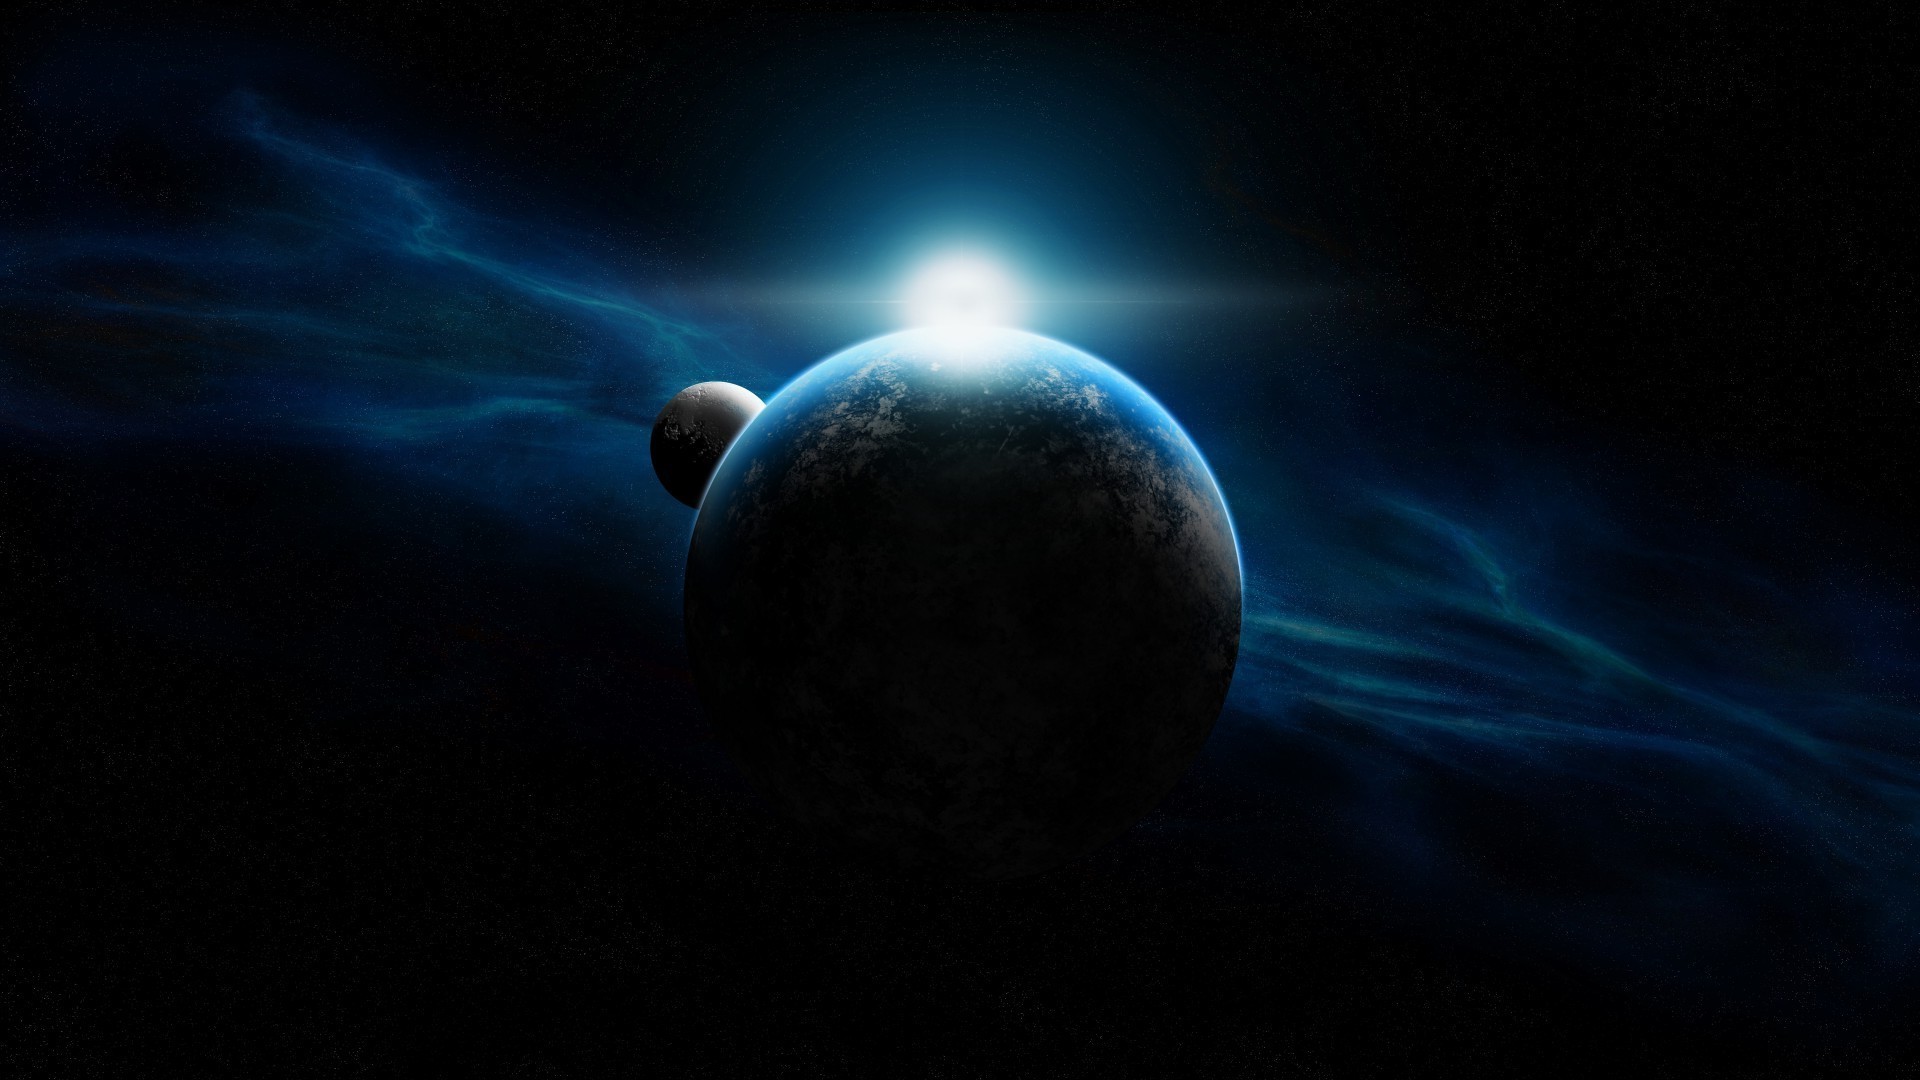 планеты луна астрономия затмение планеты солнце темный наука свет атмосфера астрология галактика размытость